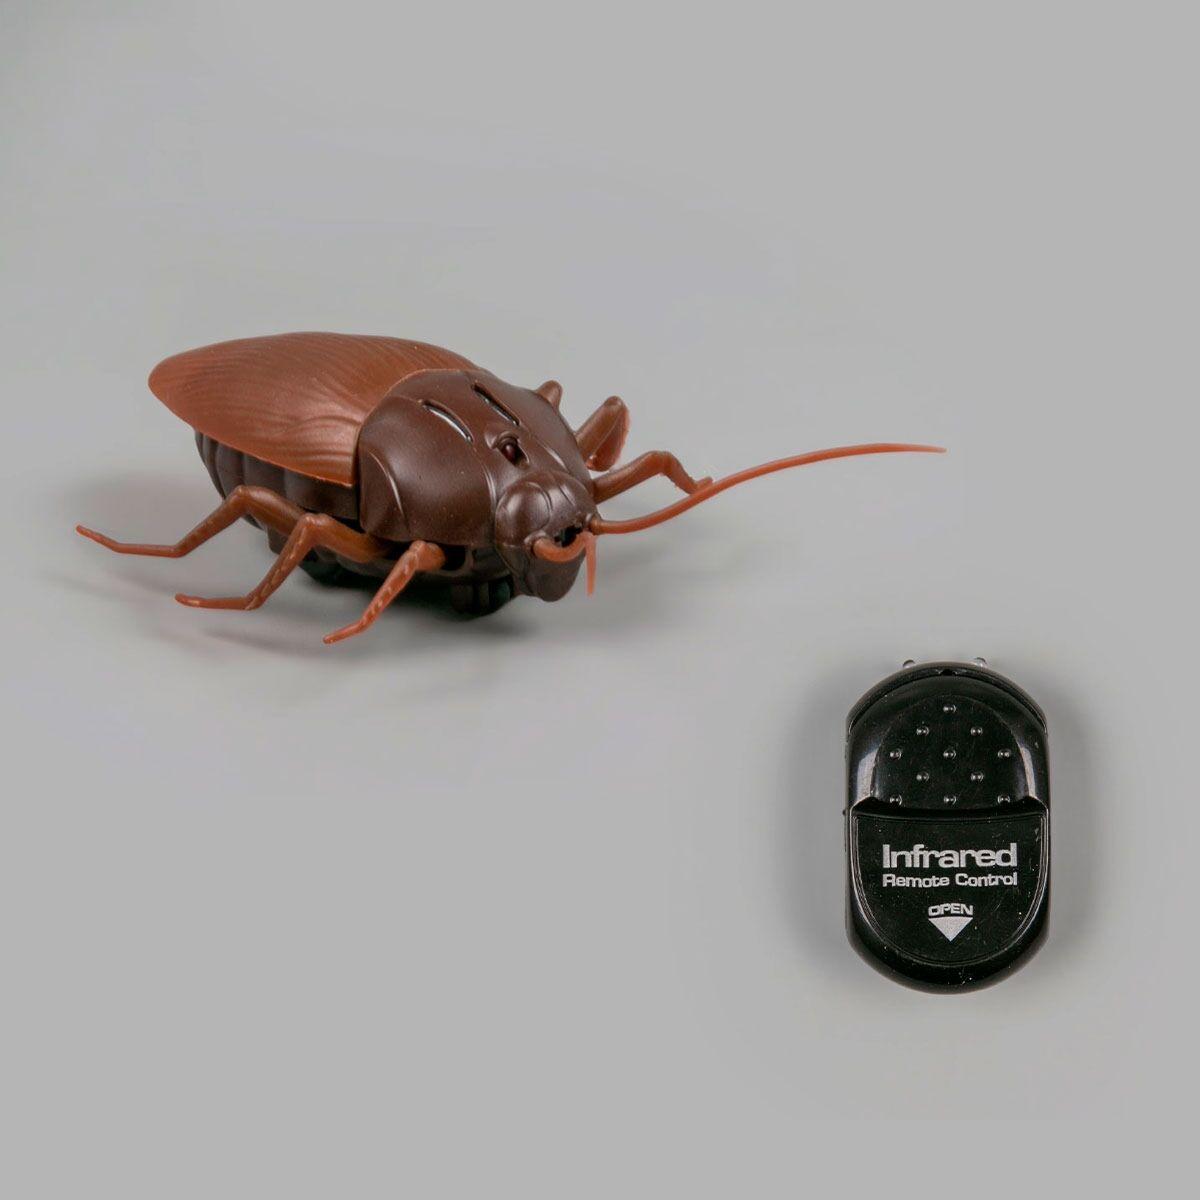 Innovation: Радиоуправляемая игрушка Таракан на пульте управления